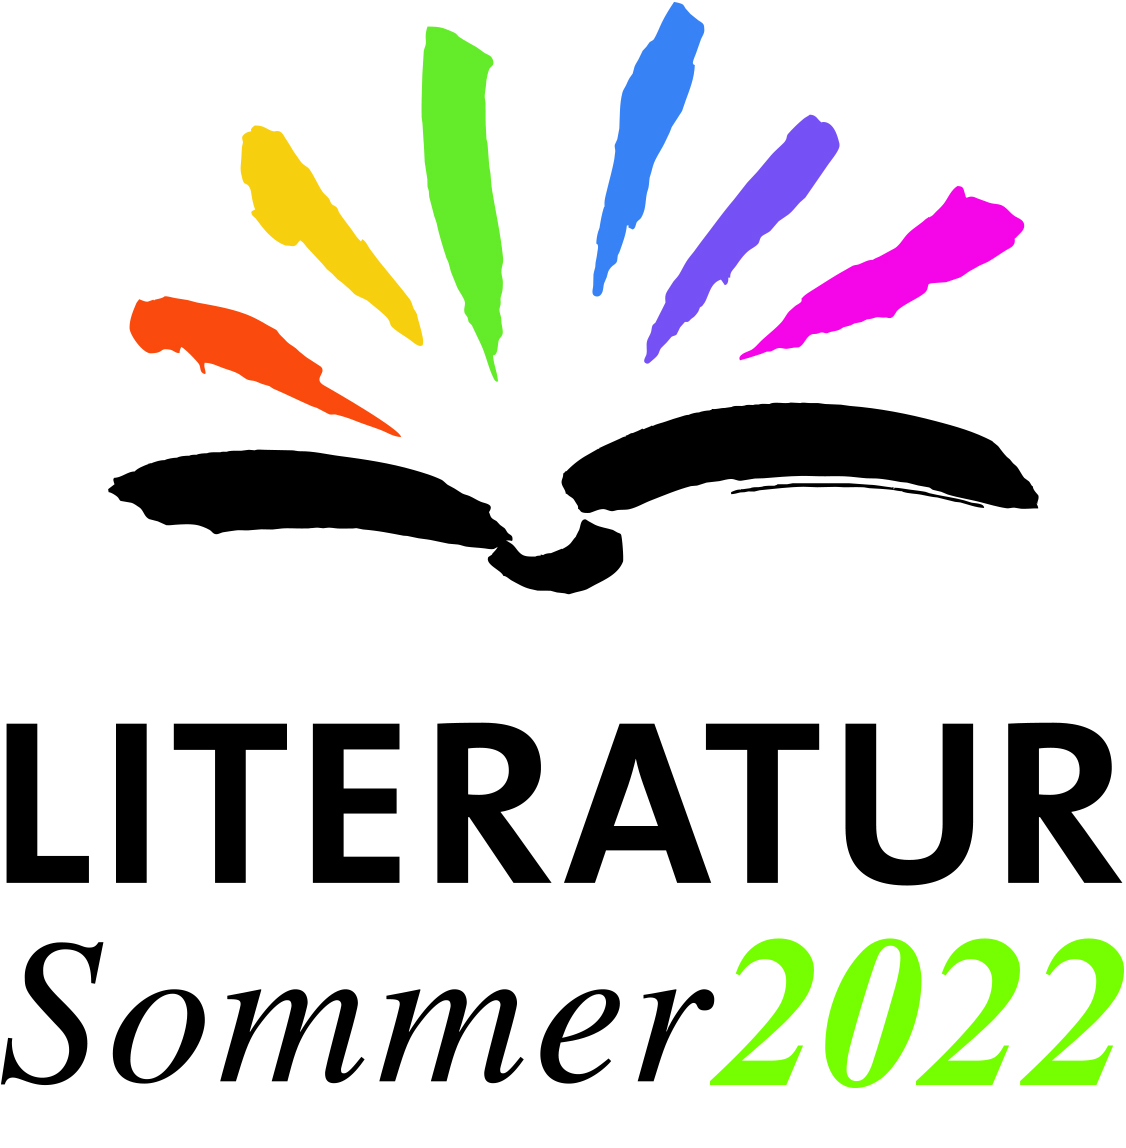  Literatursommer 2022 